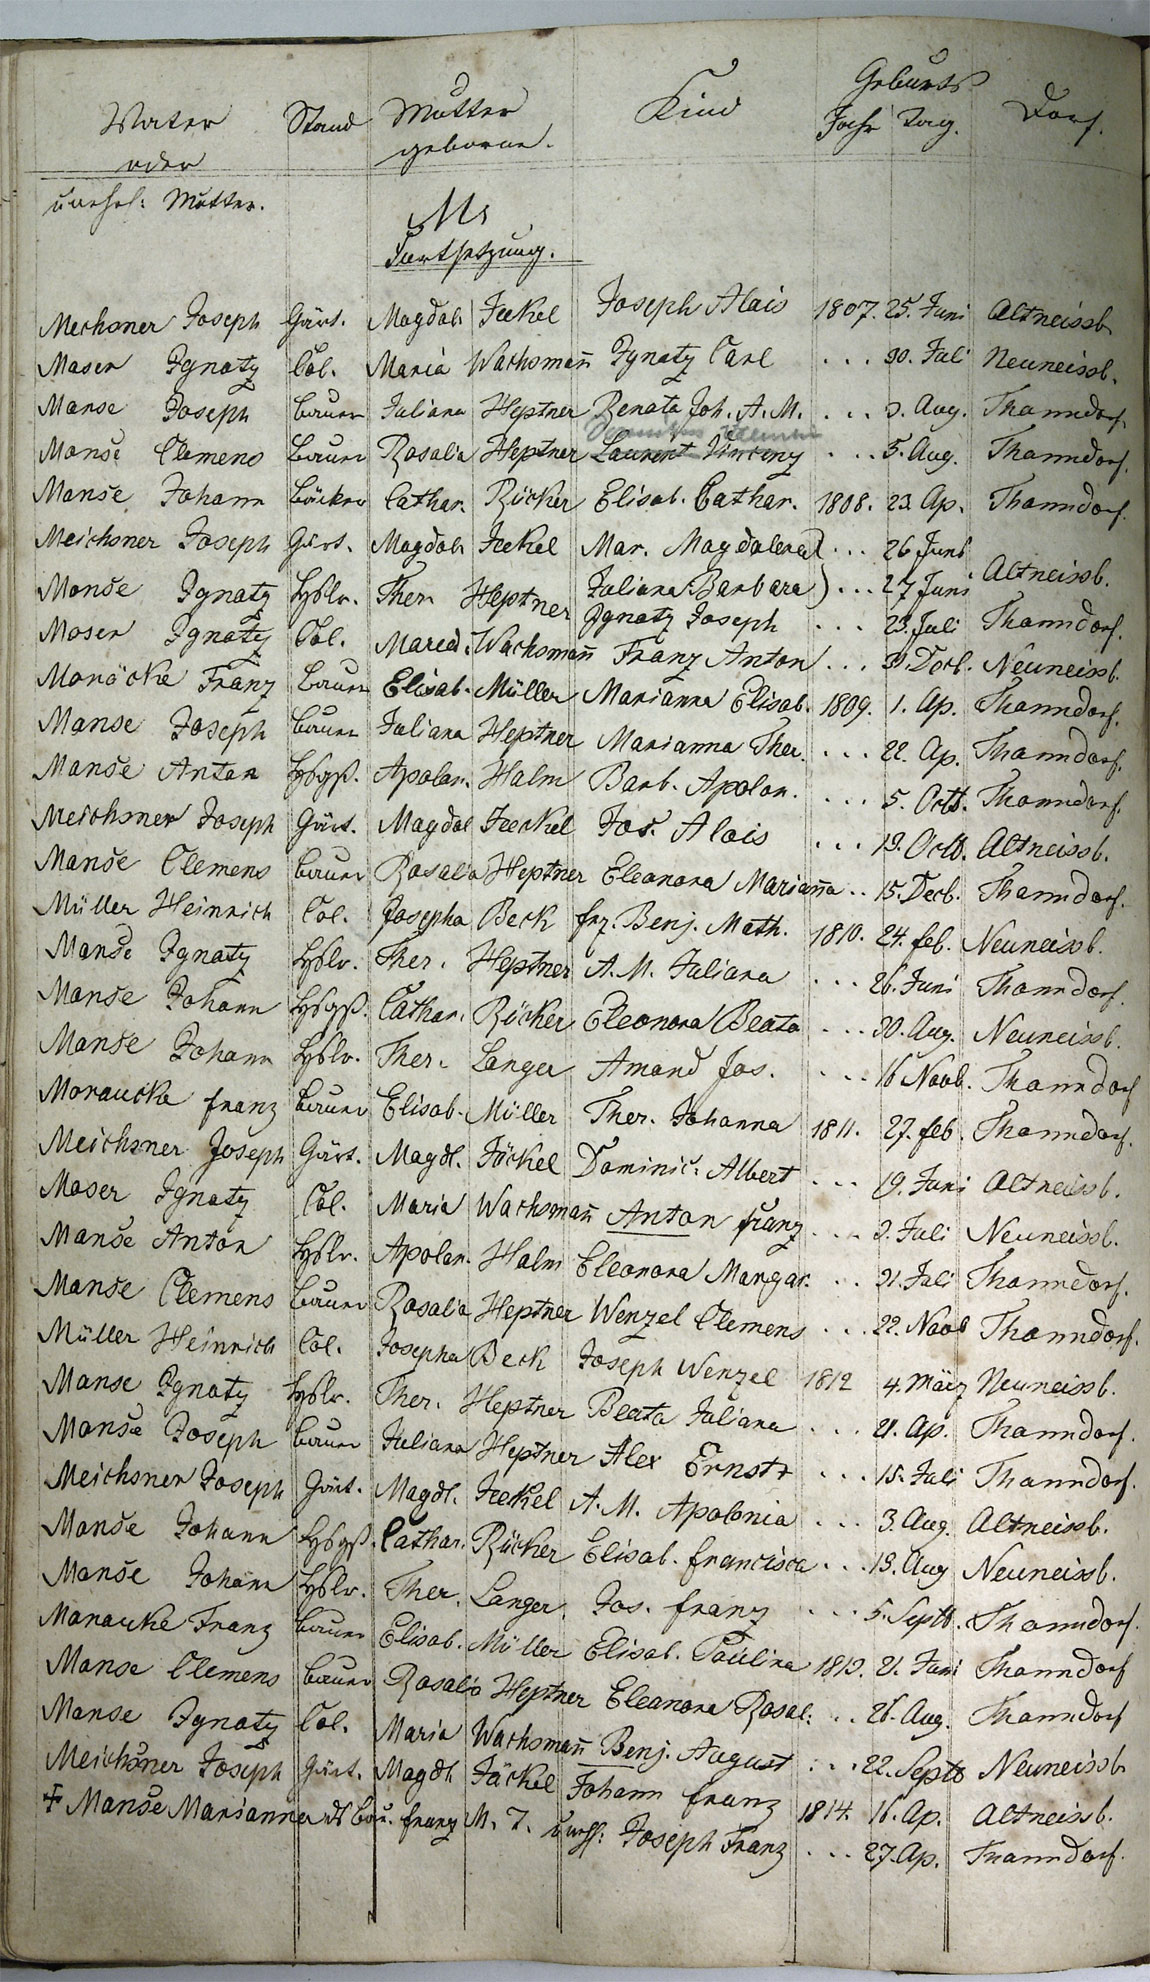 Taufregister 1770 - 1889 Seite 98